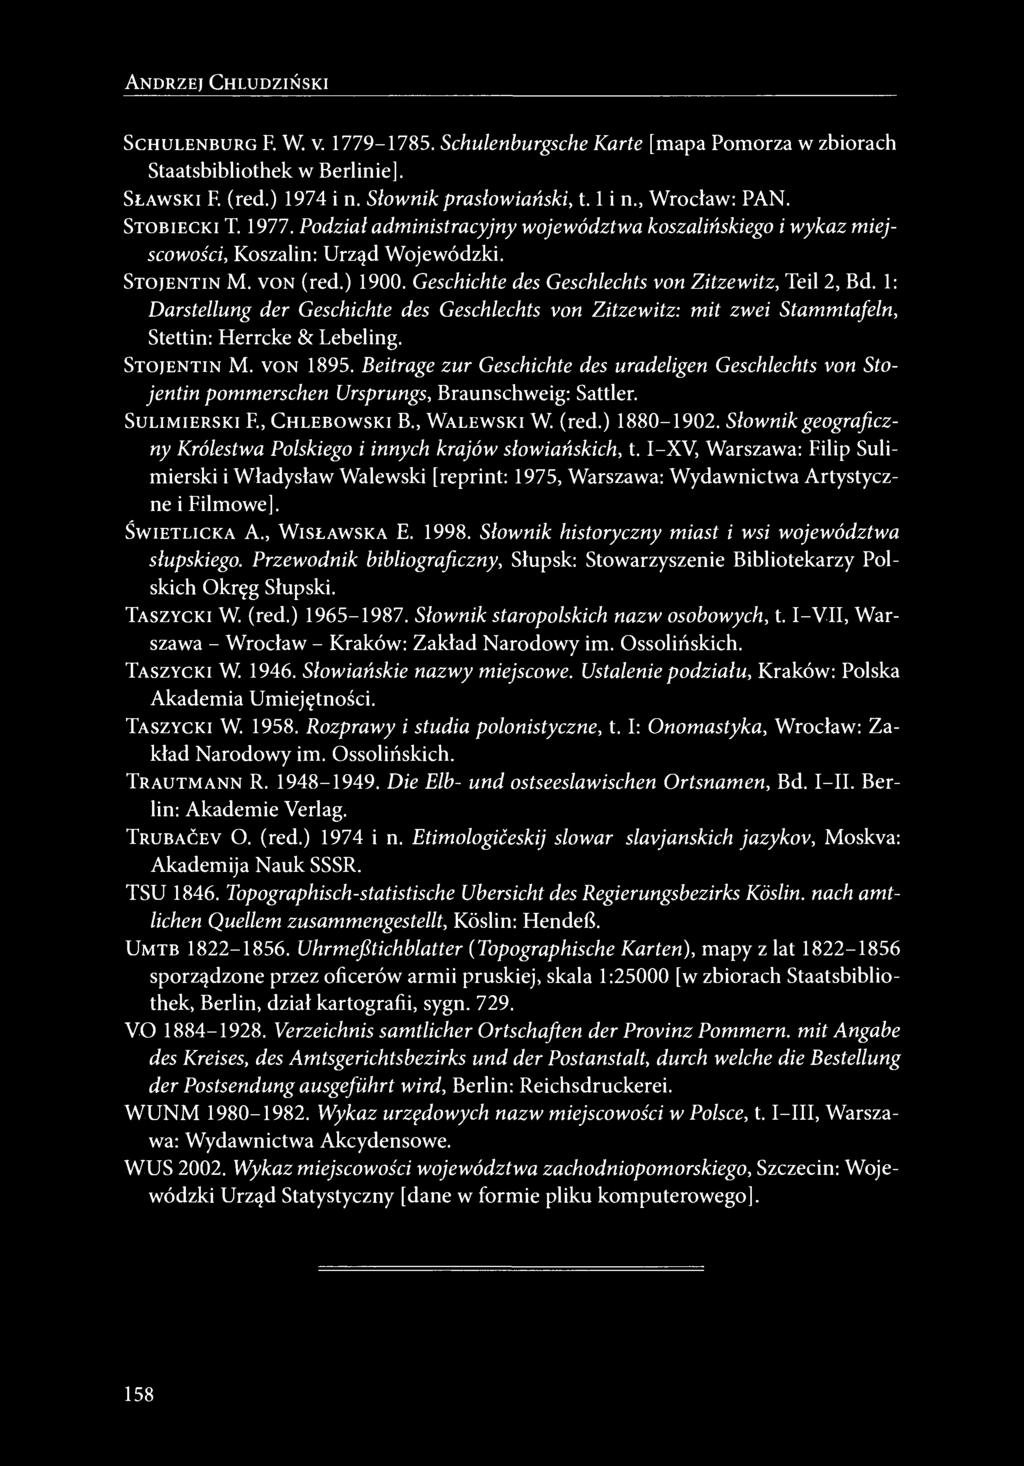 Geschichte des Geschlechts von Zitzewitz, Teil 2, Bd. 1: Darstellung der Geschichte des Geschlechts von Zitzewitz: mit zwei Stammtafeln, Stettin: Herrcke & Lebeling. STOJENTIN M. VON 1895.